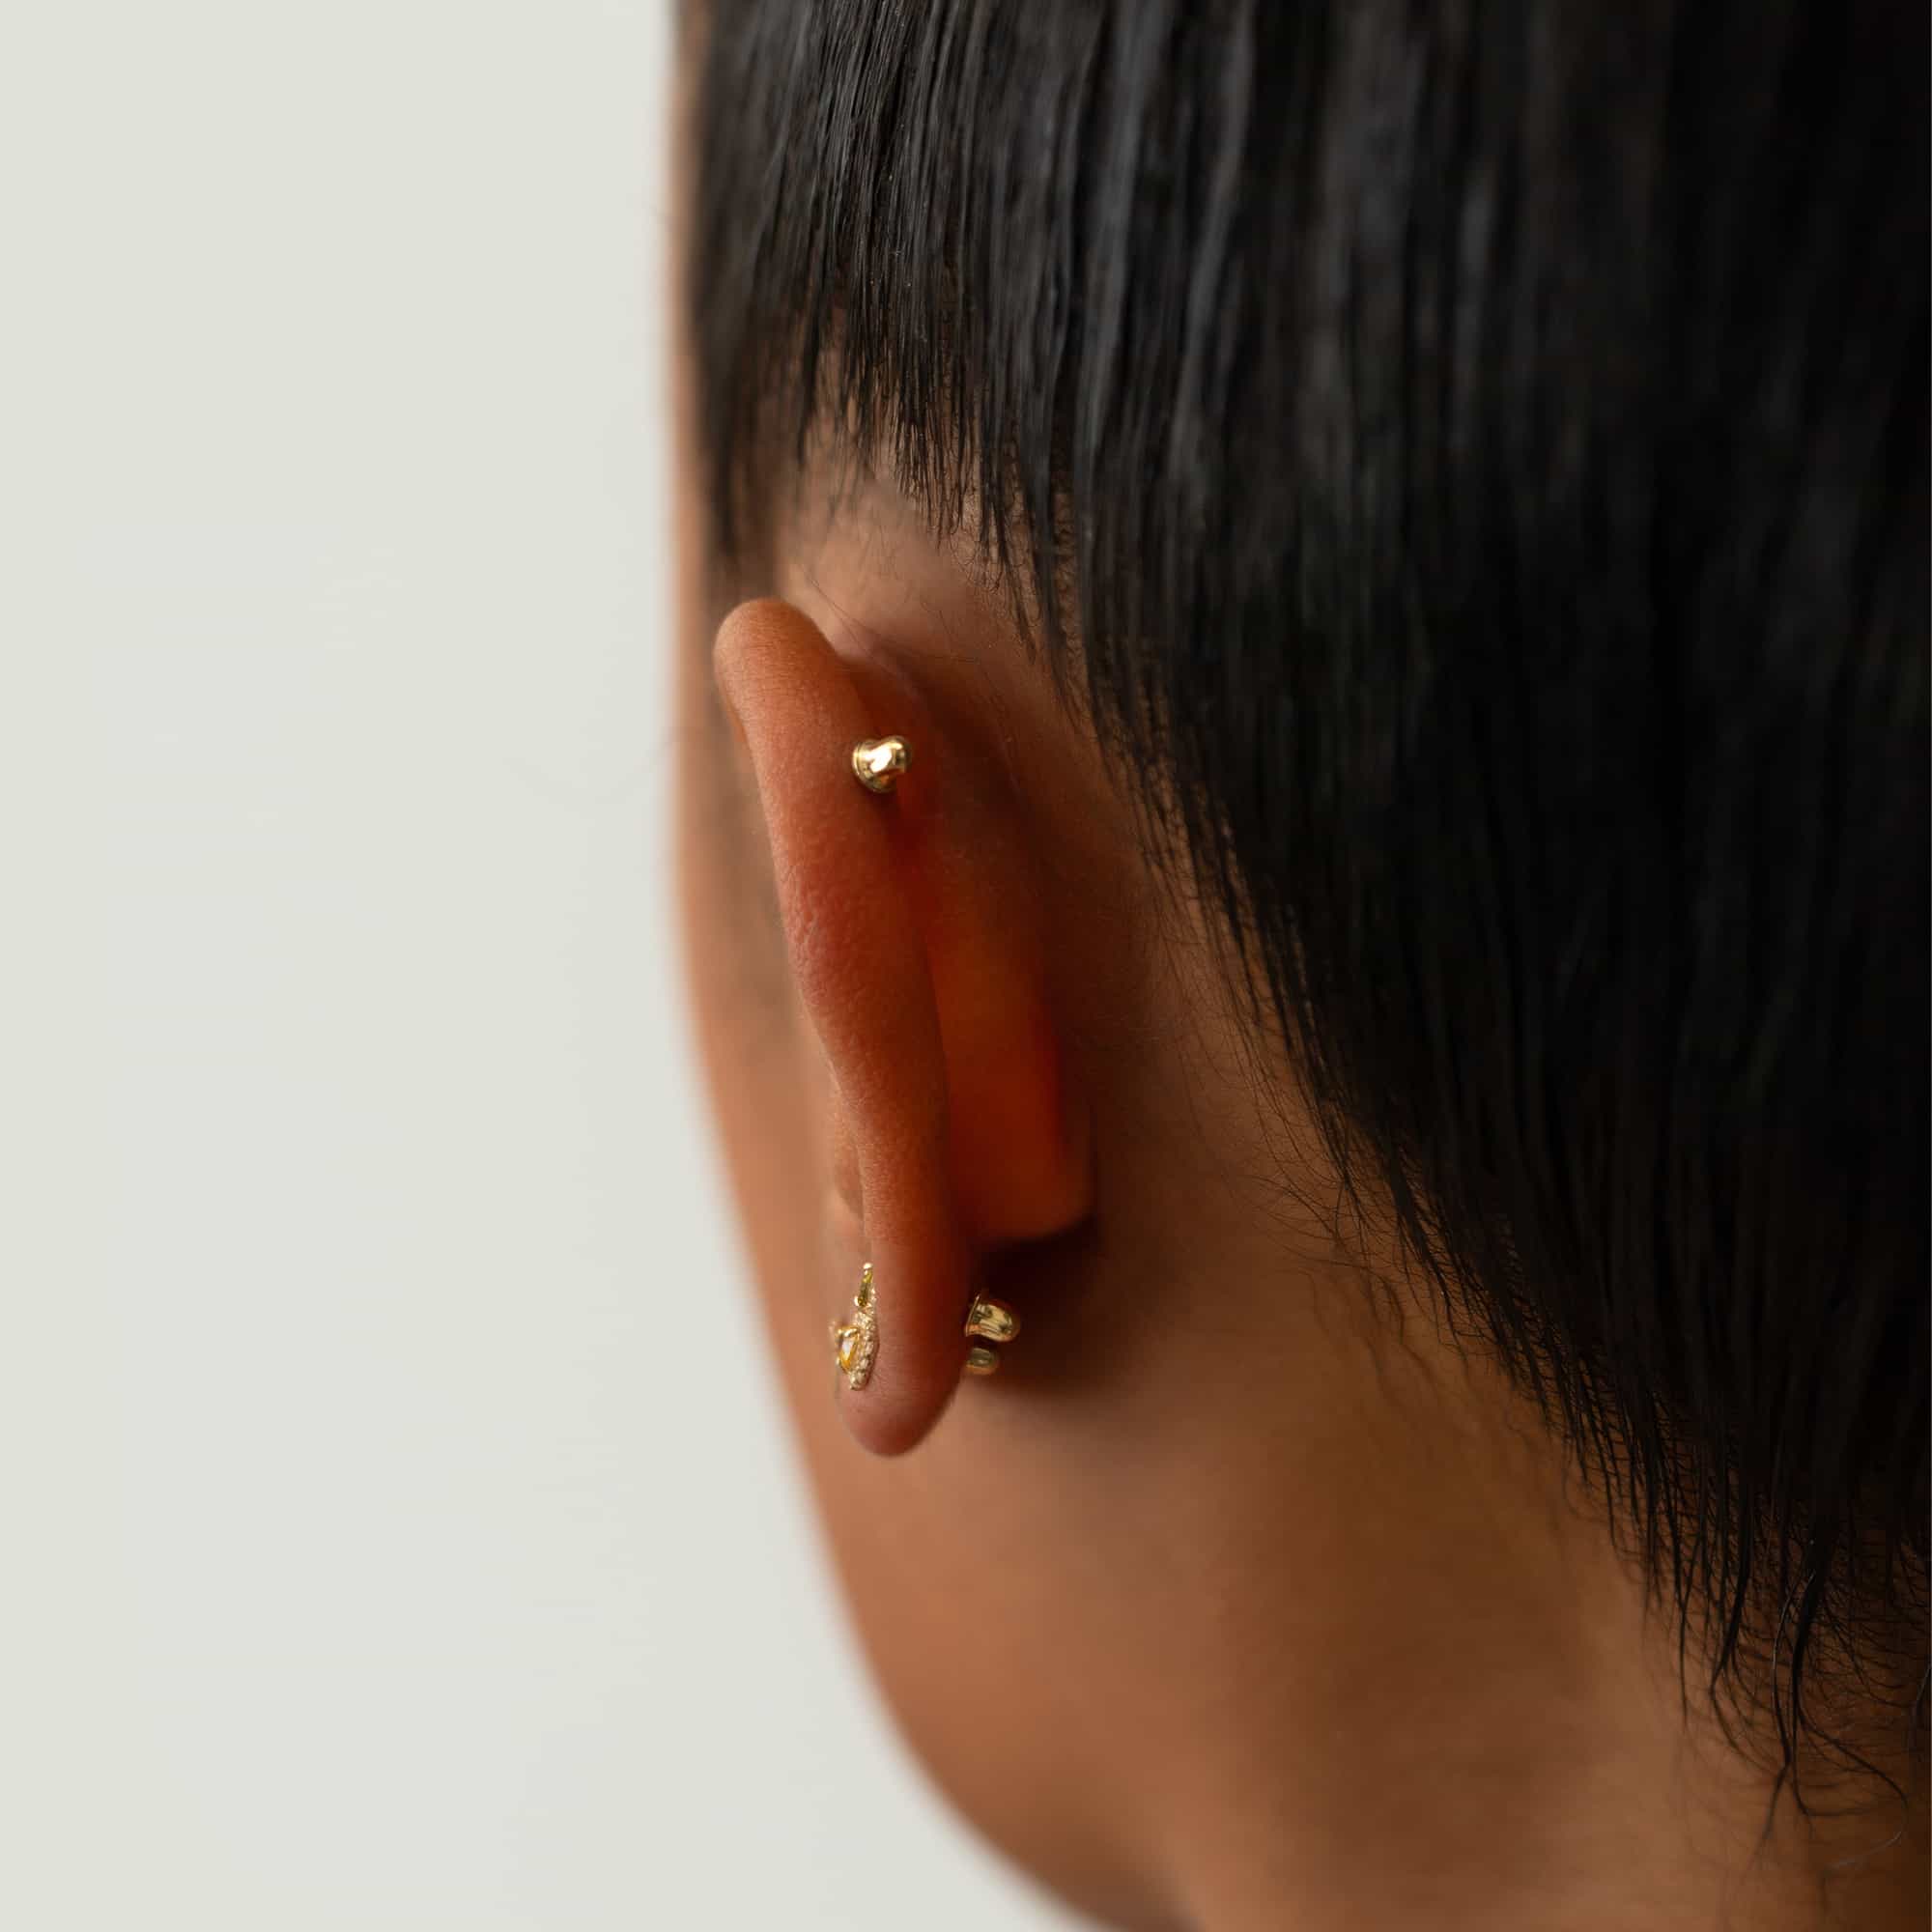 Diamond Stud Earrings, 18 Karat White Gold Screwback Earring Backs, 1 Pair